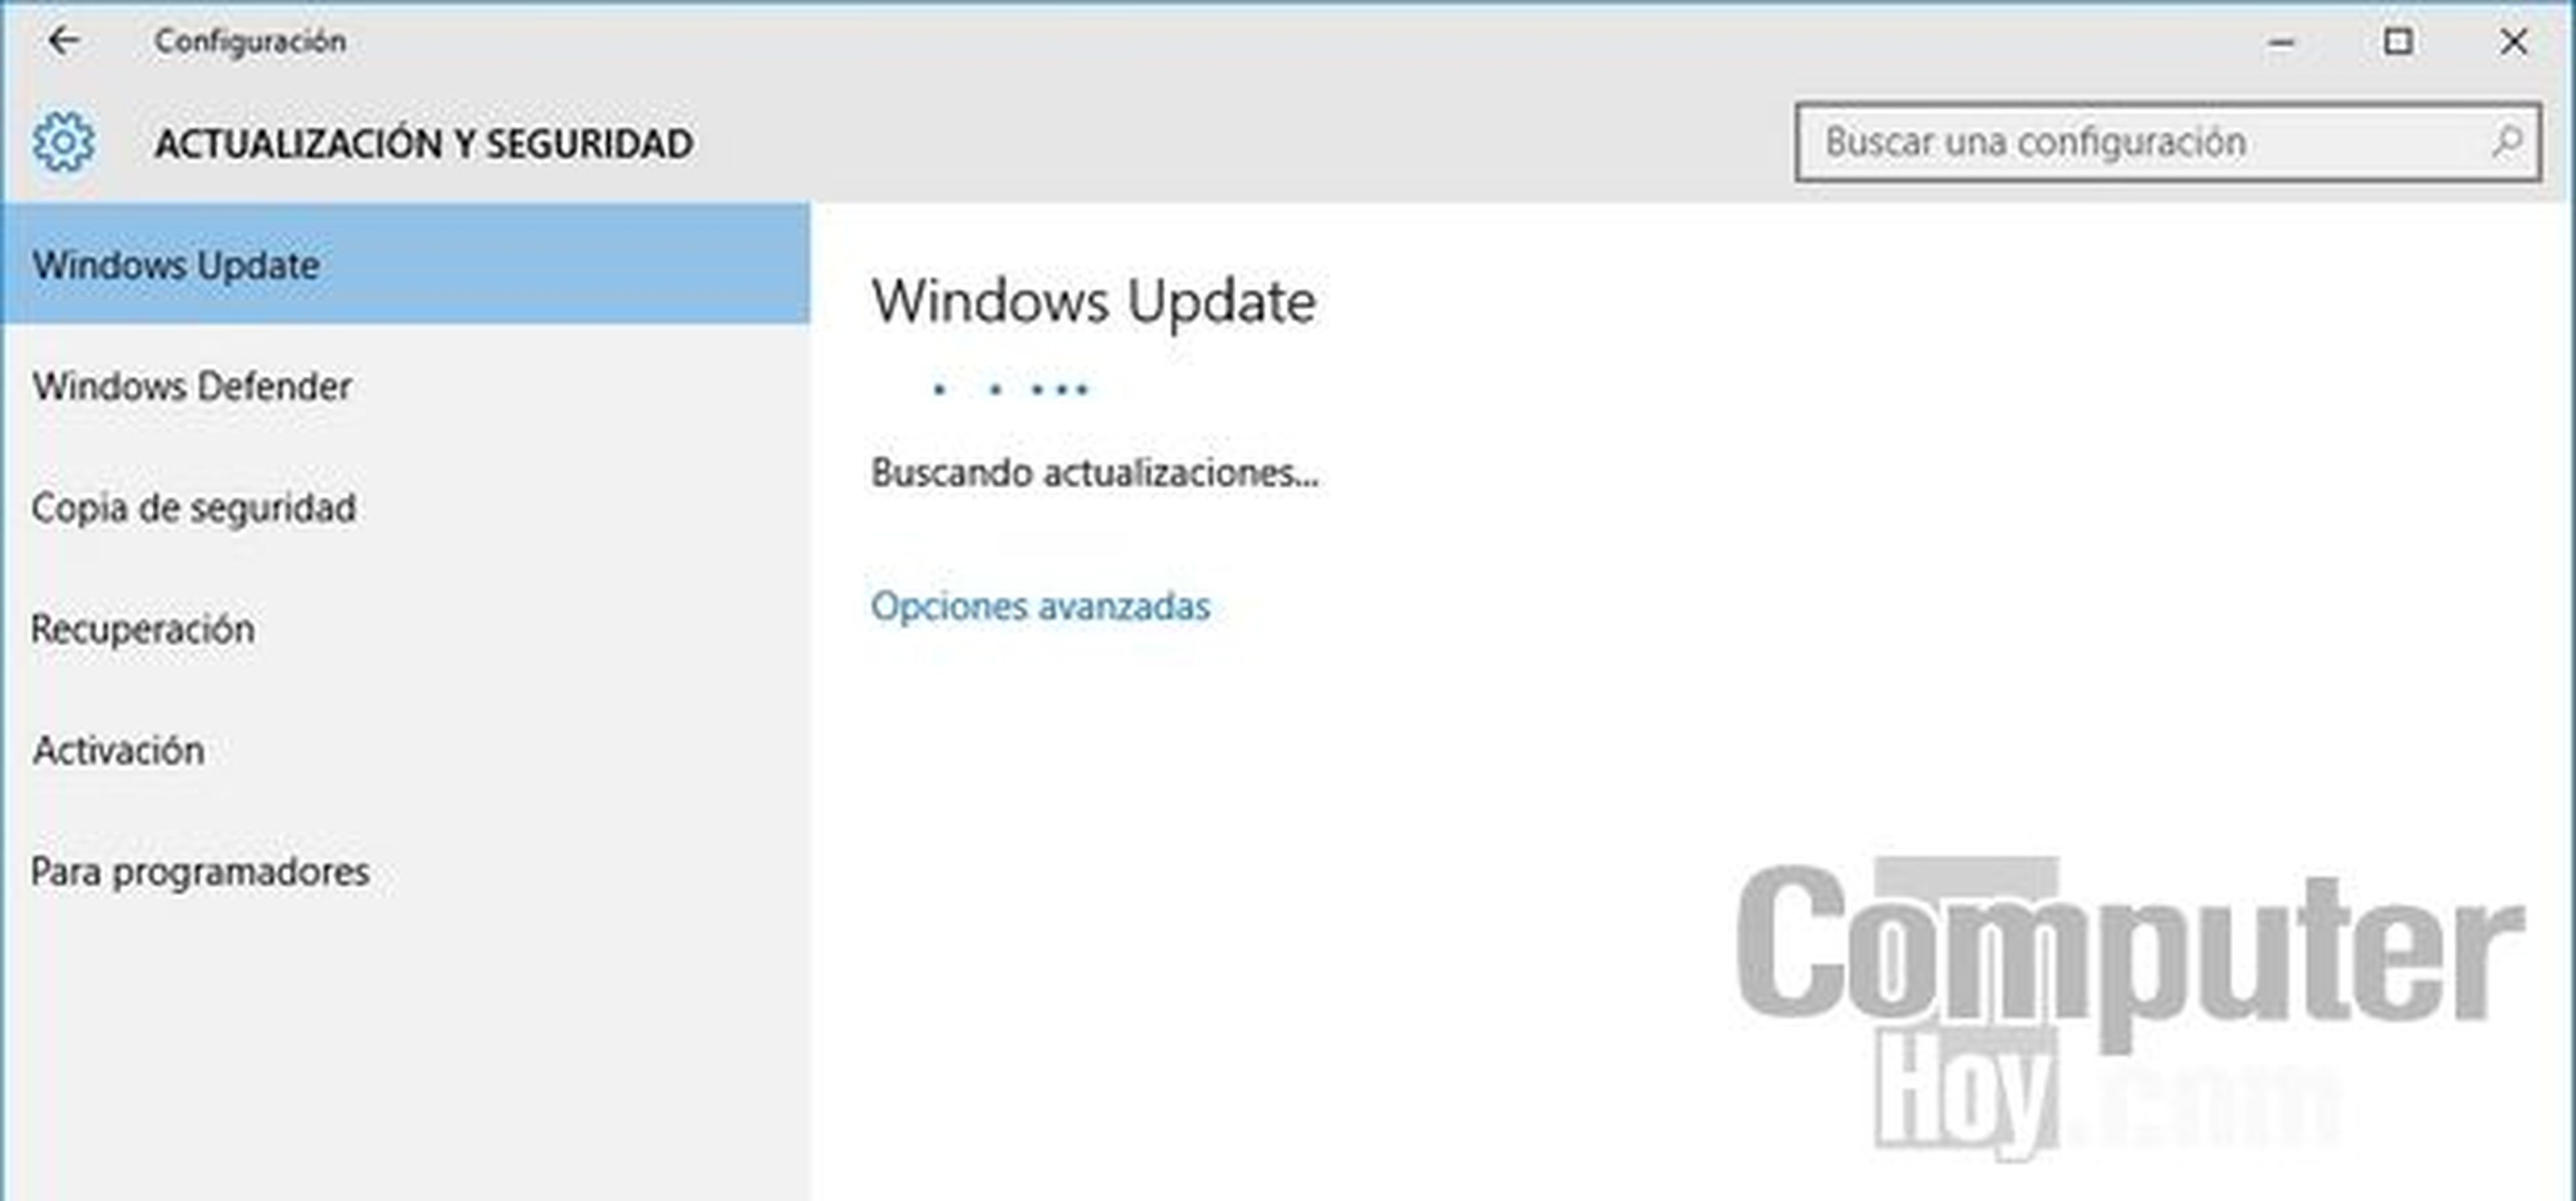 Cómo instalar Windows 10, primeras impresiones